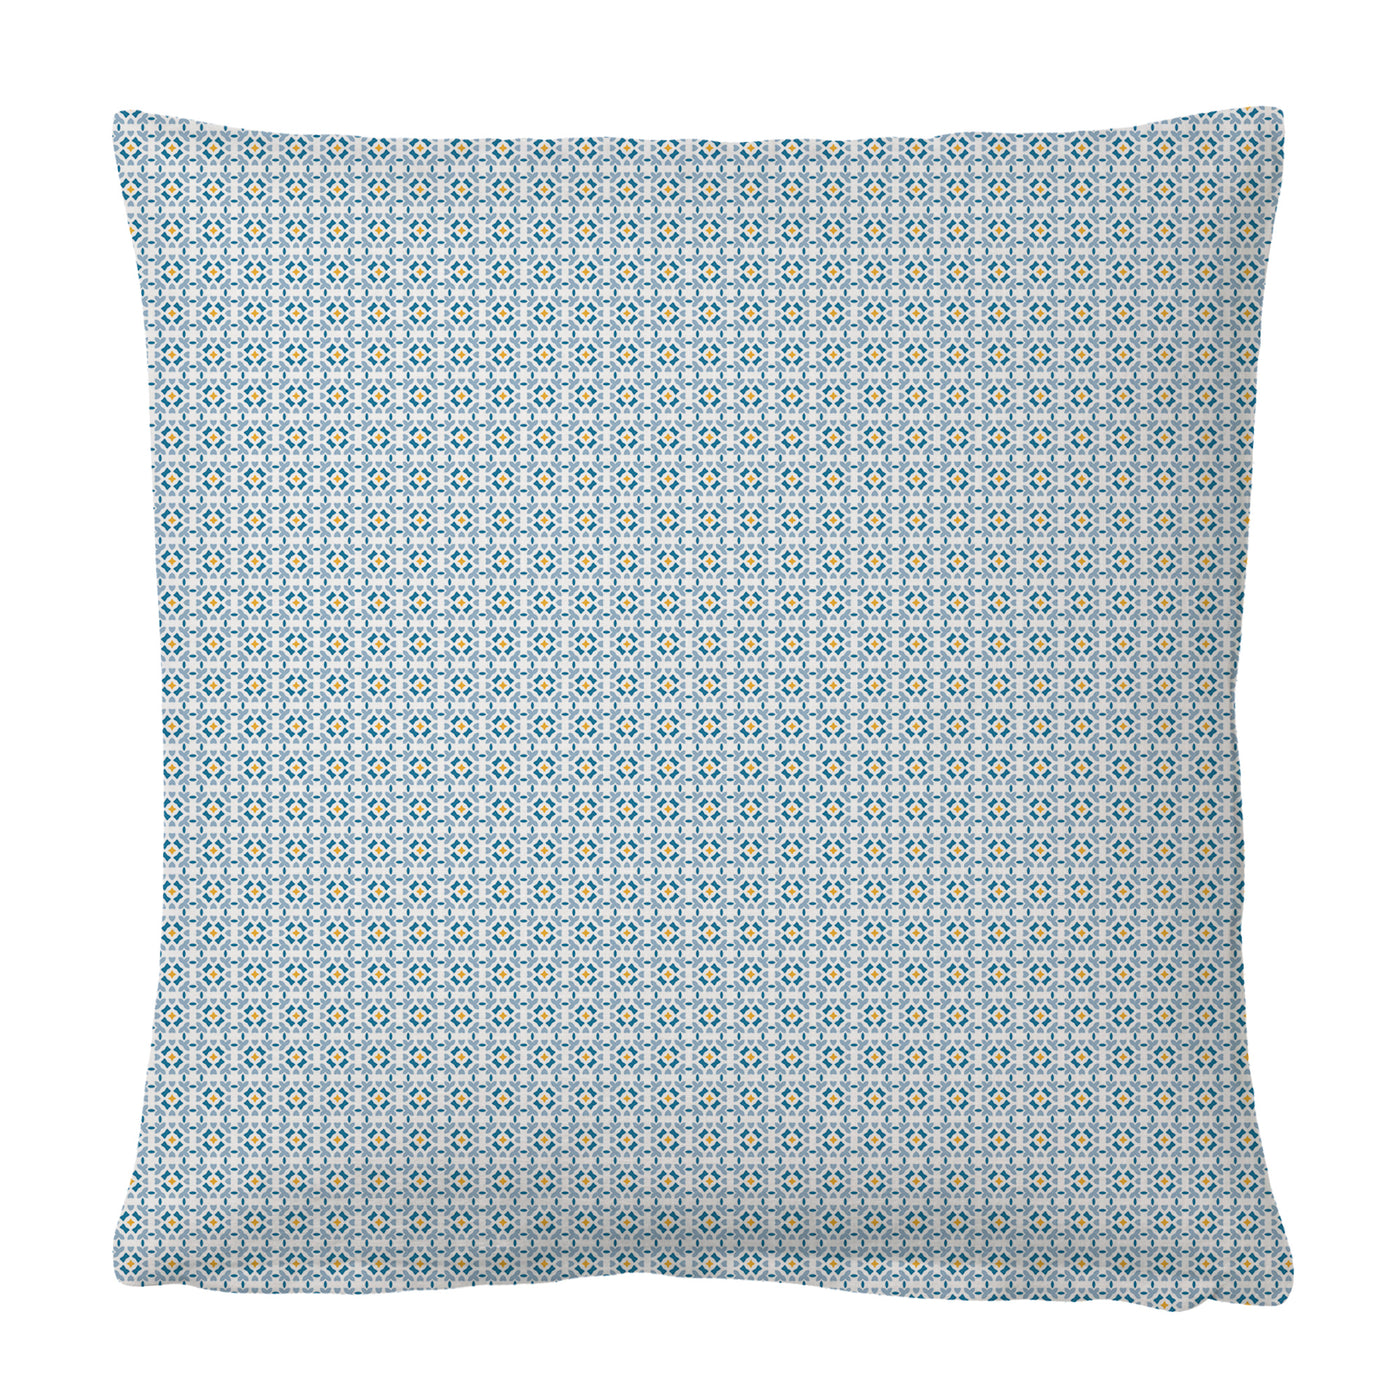 Mosaic blue pillow